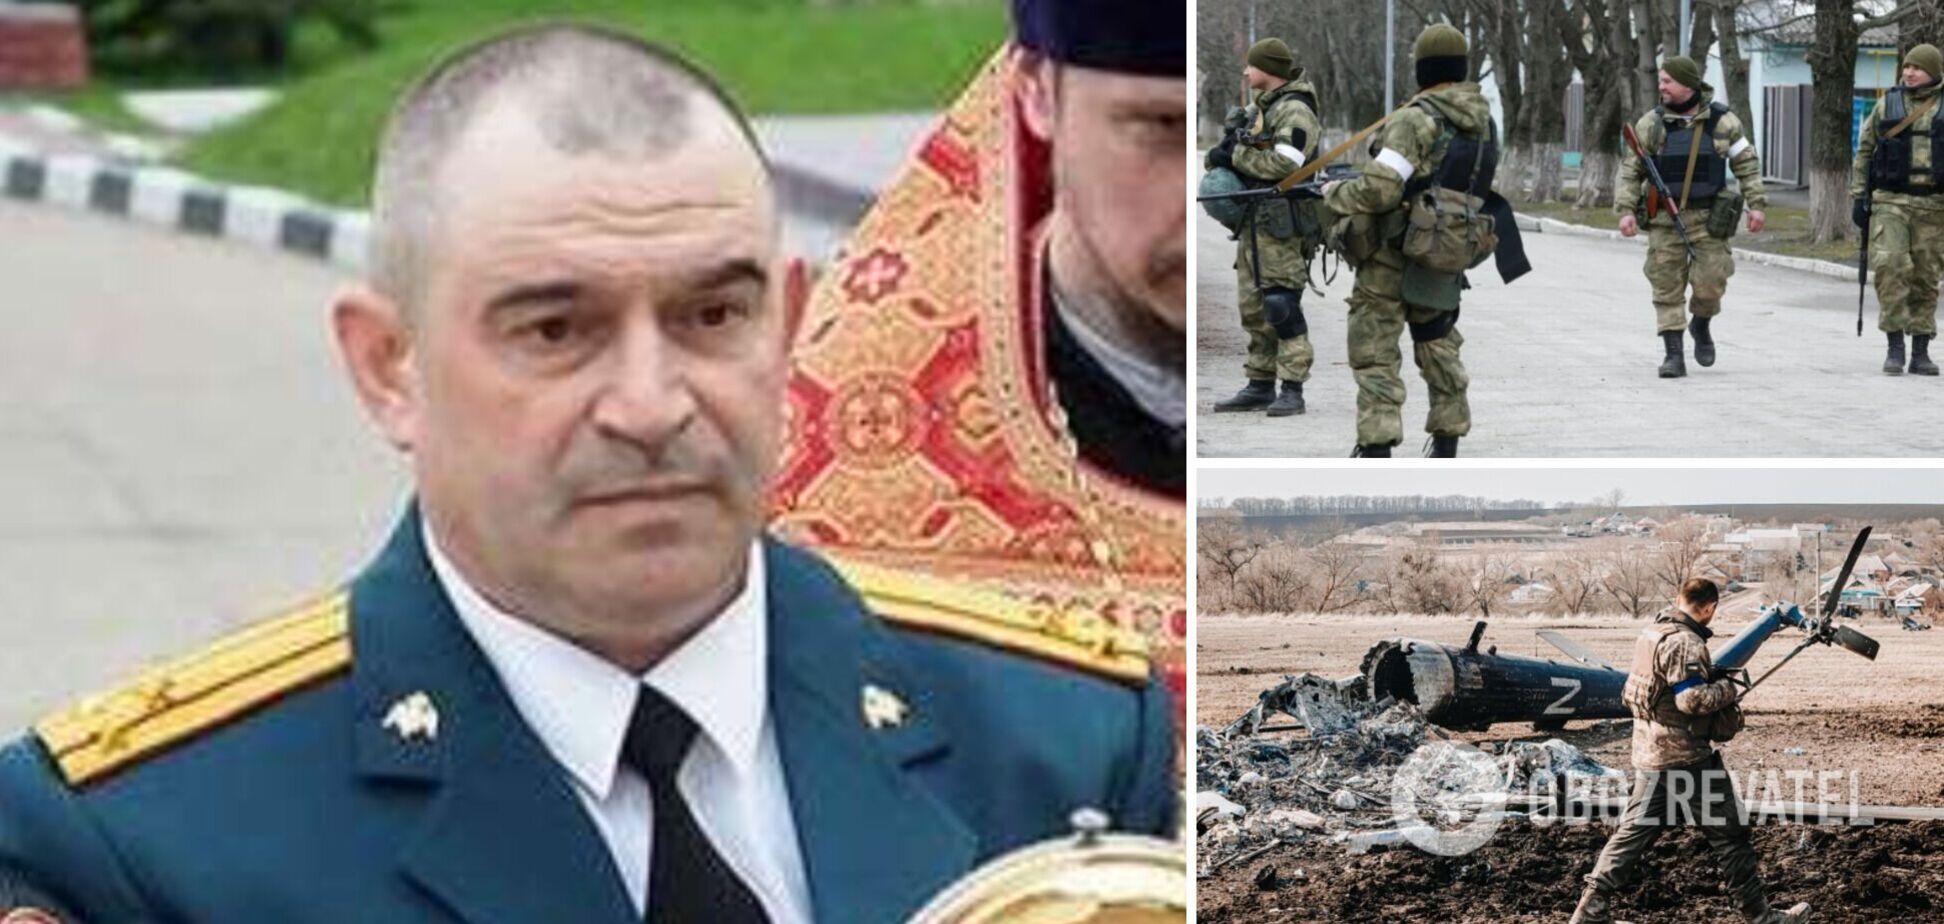 Розвідка опублікувала дані командира-зрадника з Криму, який воює проти України